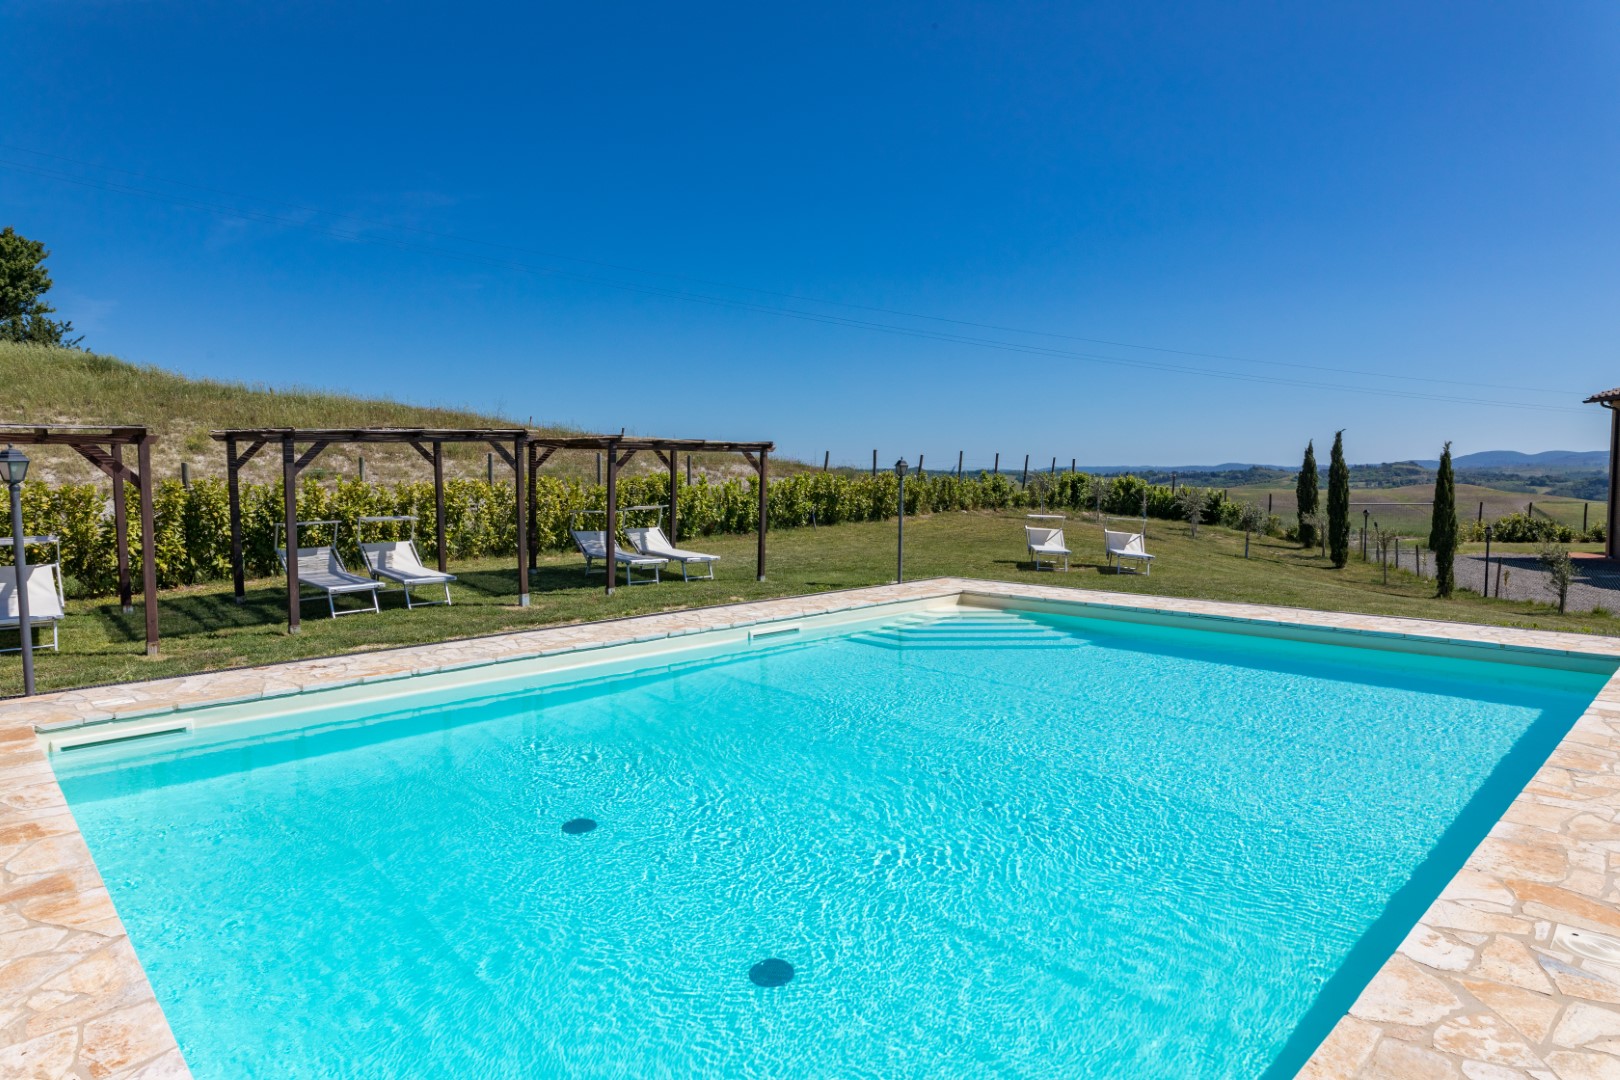 330_16dbbc4_Agriturismo, vakantiehuis met zwembad, kleinschalig, Toscane, Buonconvento, Siena, Podere Torricella, Italie (7)